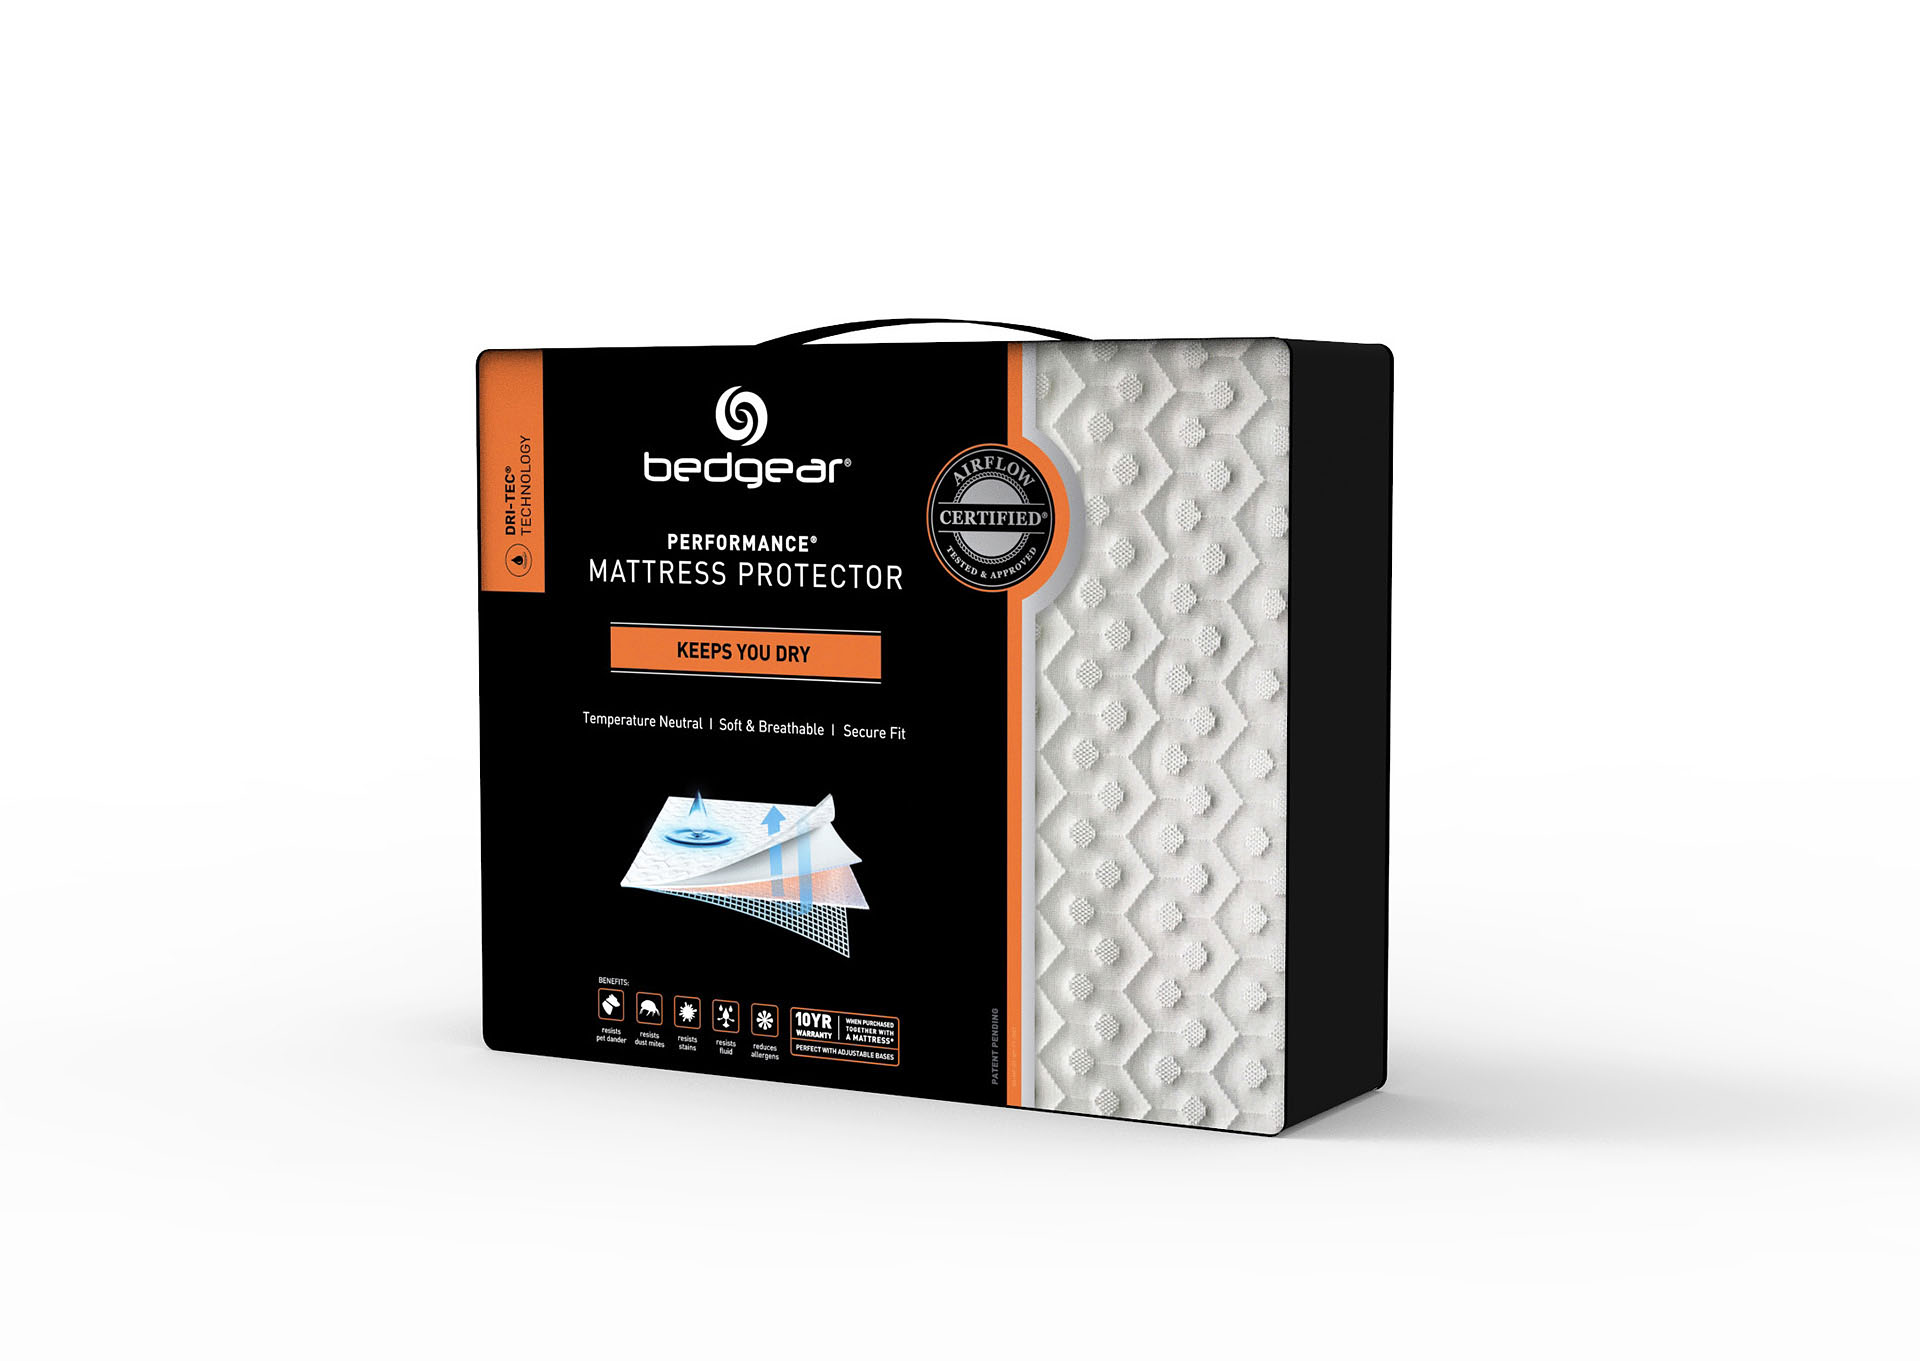 dri tec 5.0 mattress protector reviews